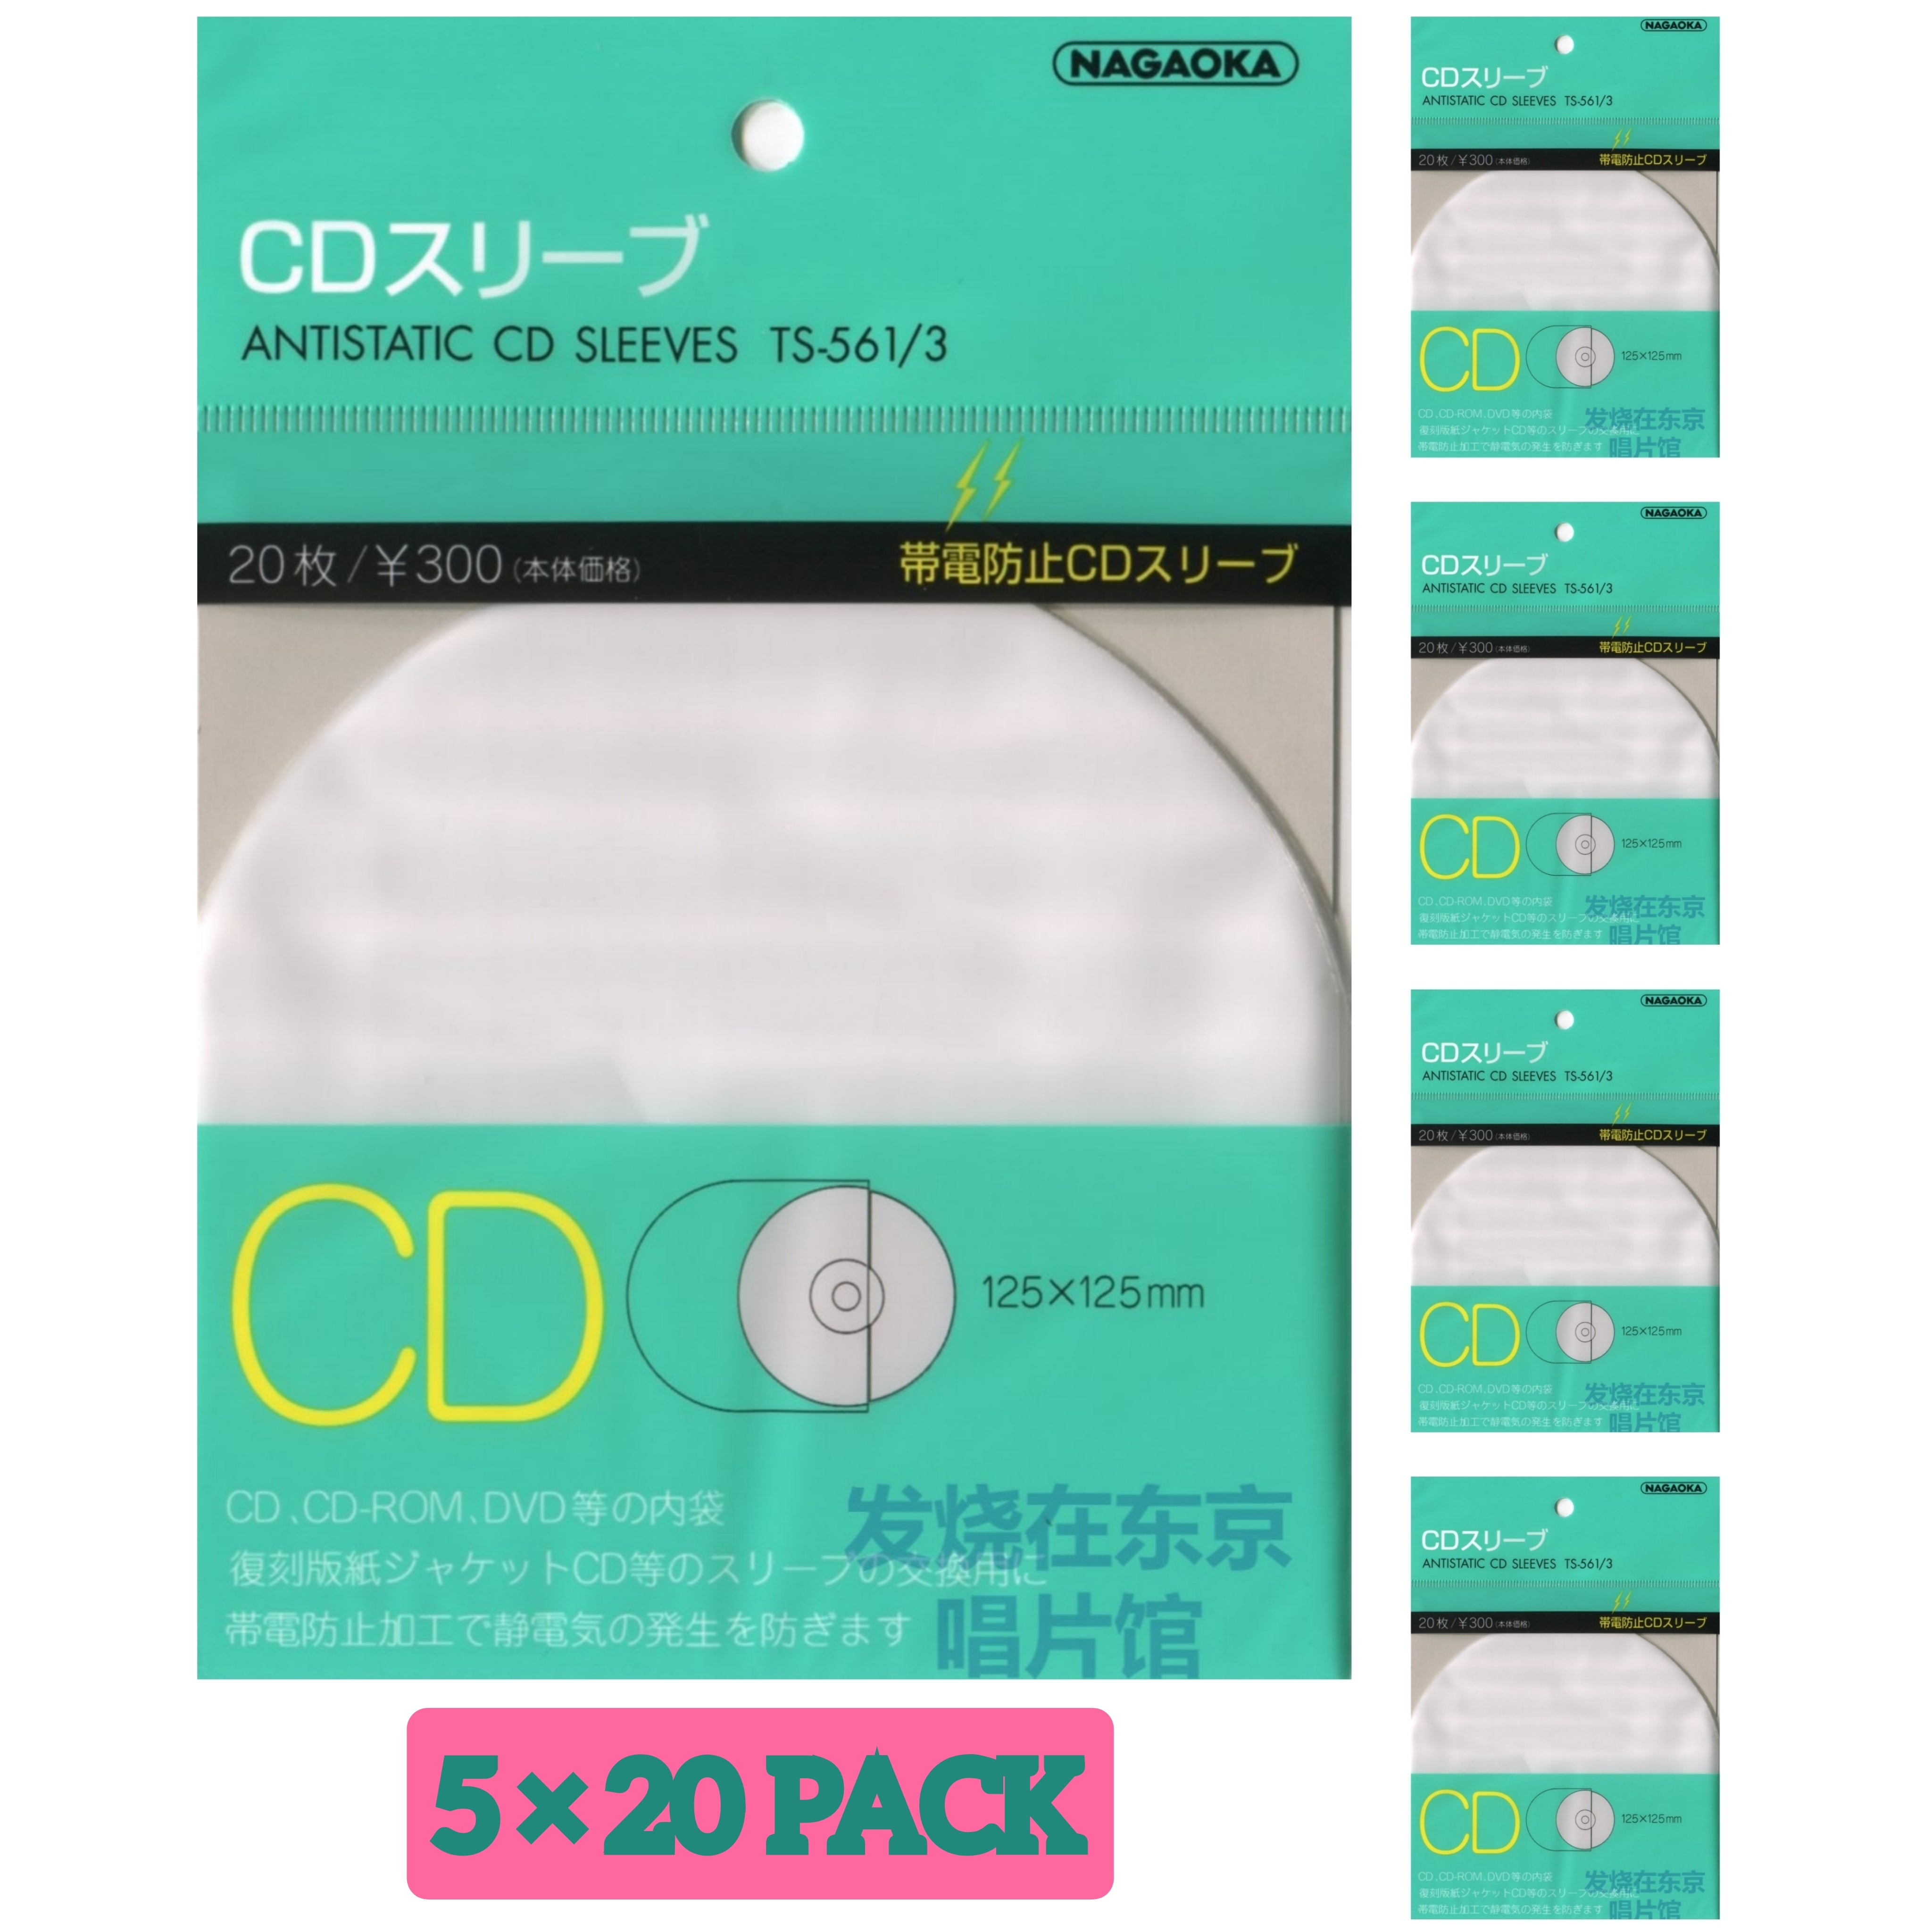 5 x 20 Nagaoka TS-561/3 CD Inners